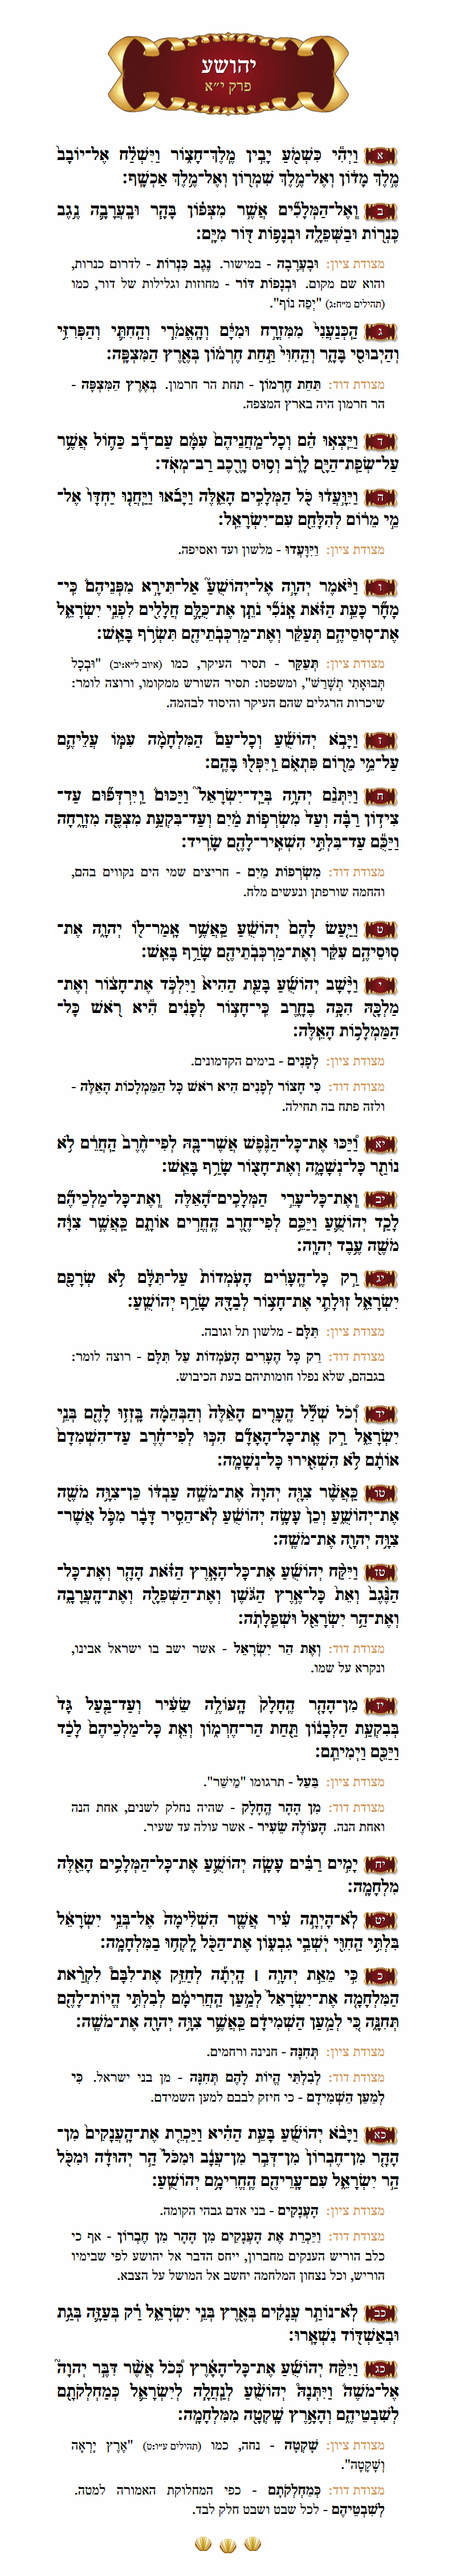 ספר יהושע פרק י״א עם מפרשים